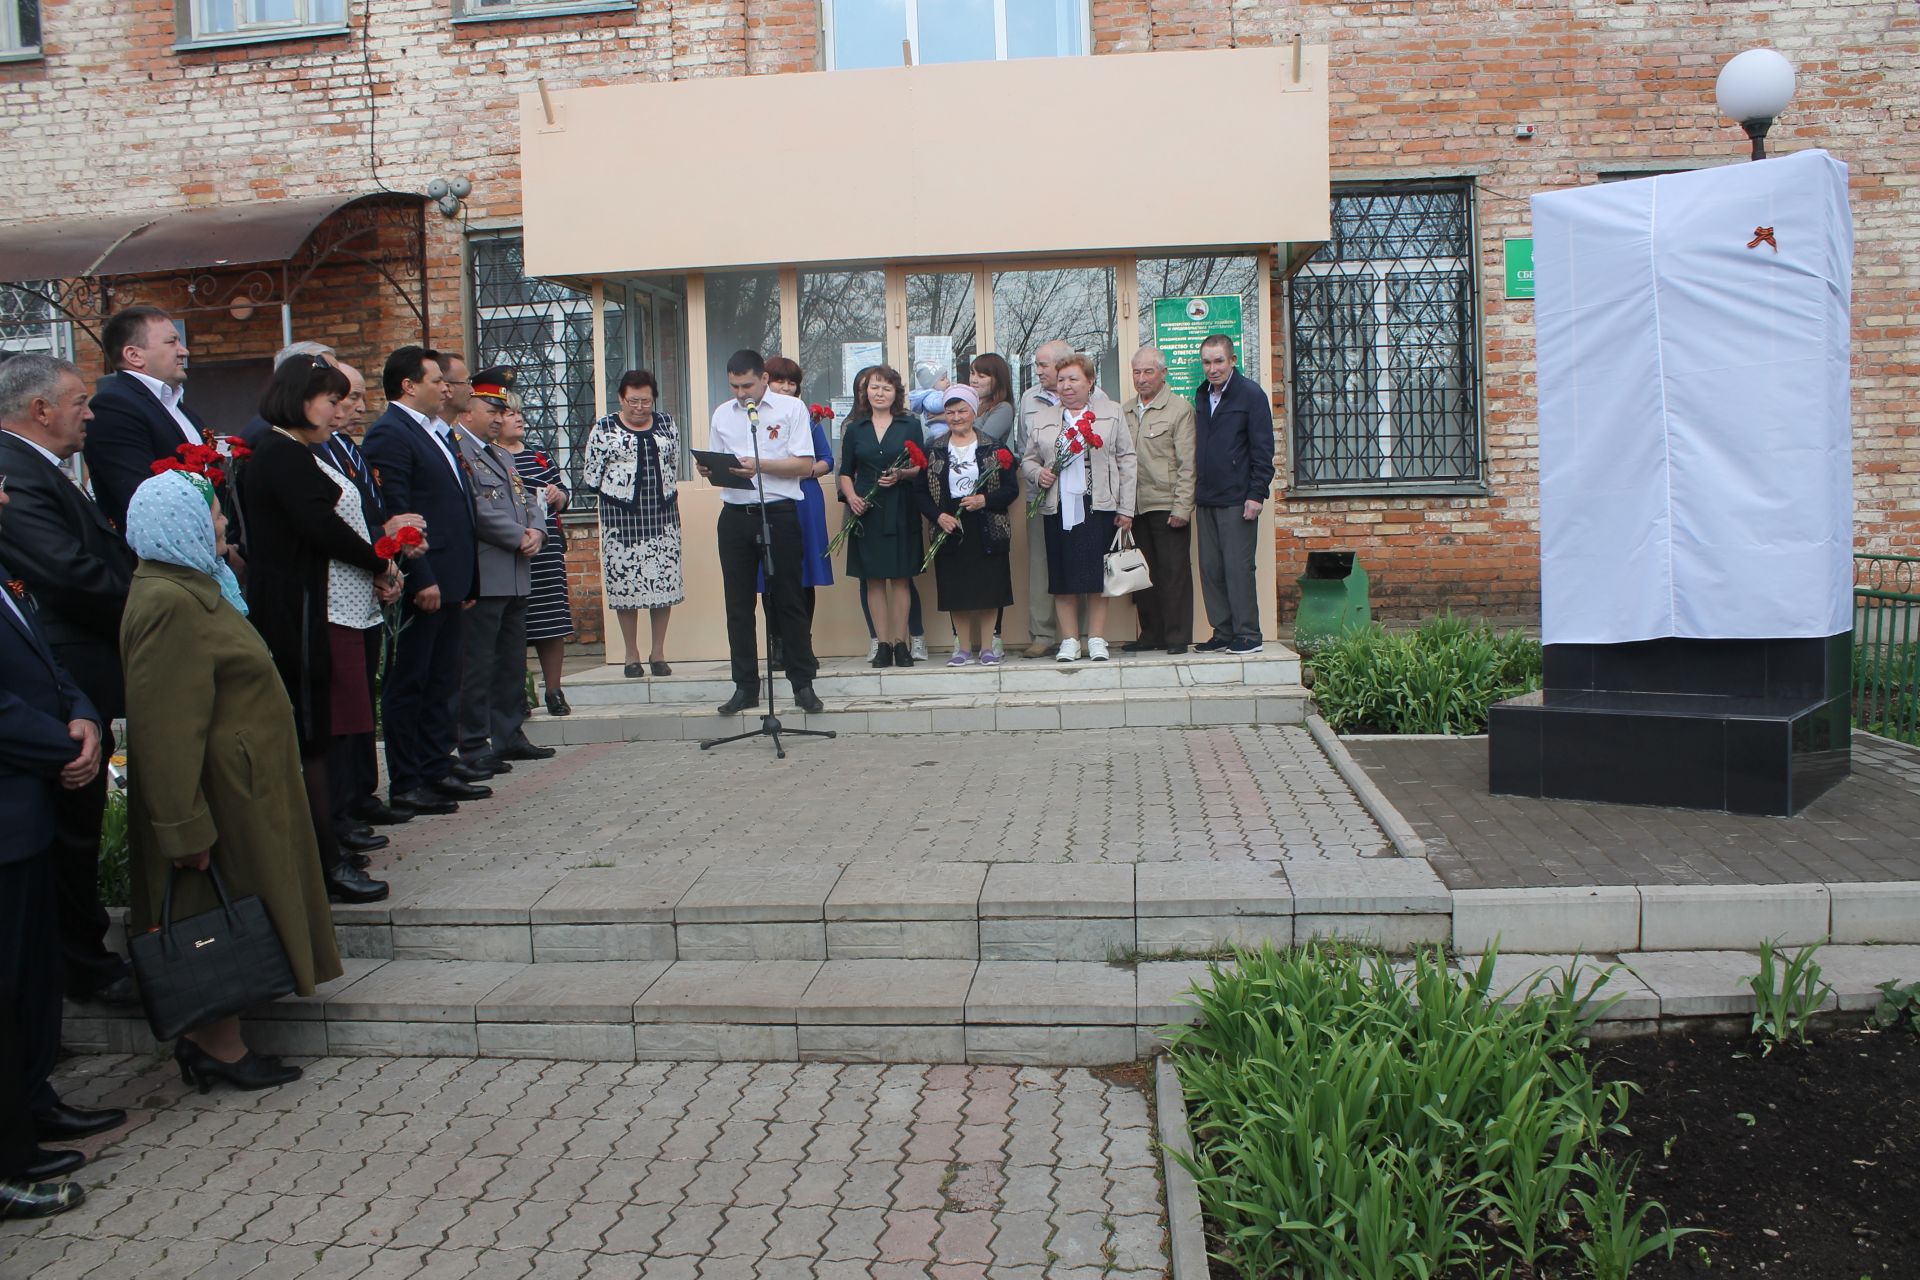 Сегодня жители села Байряка и многочисленные гости торжественно отметили 74-летие Великой Победы.